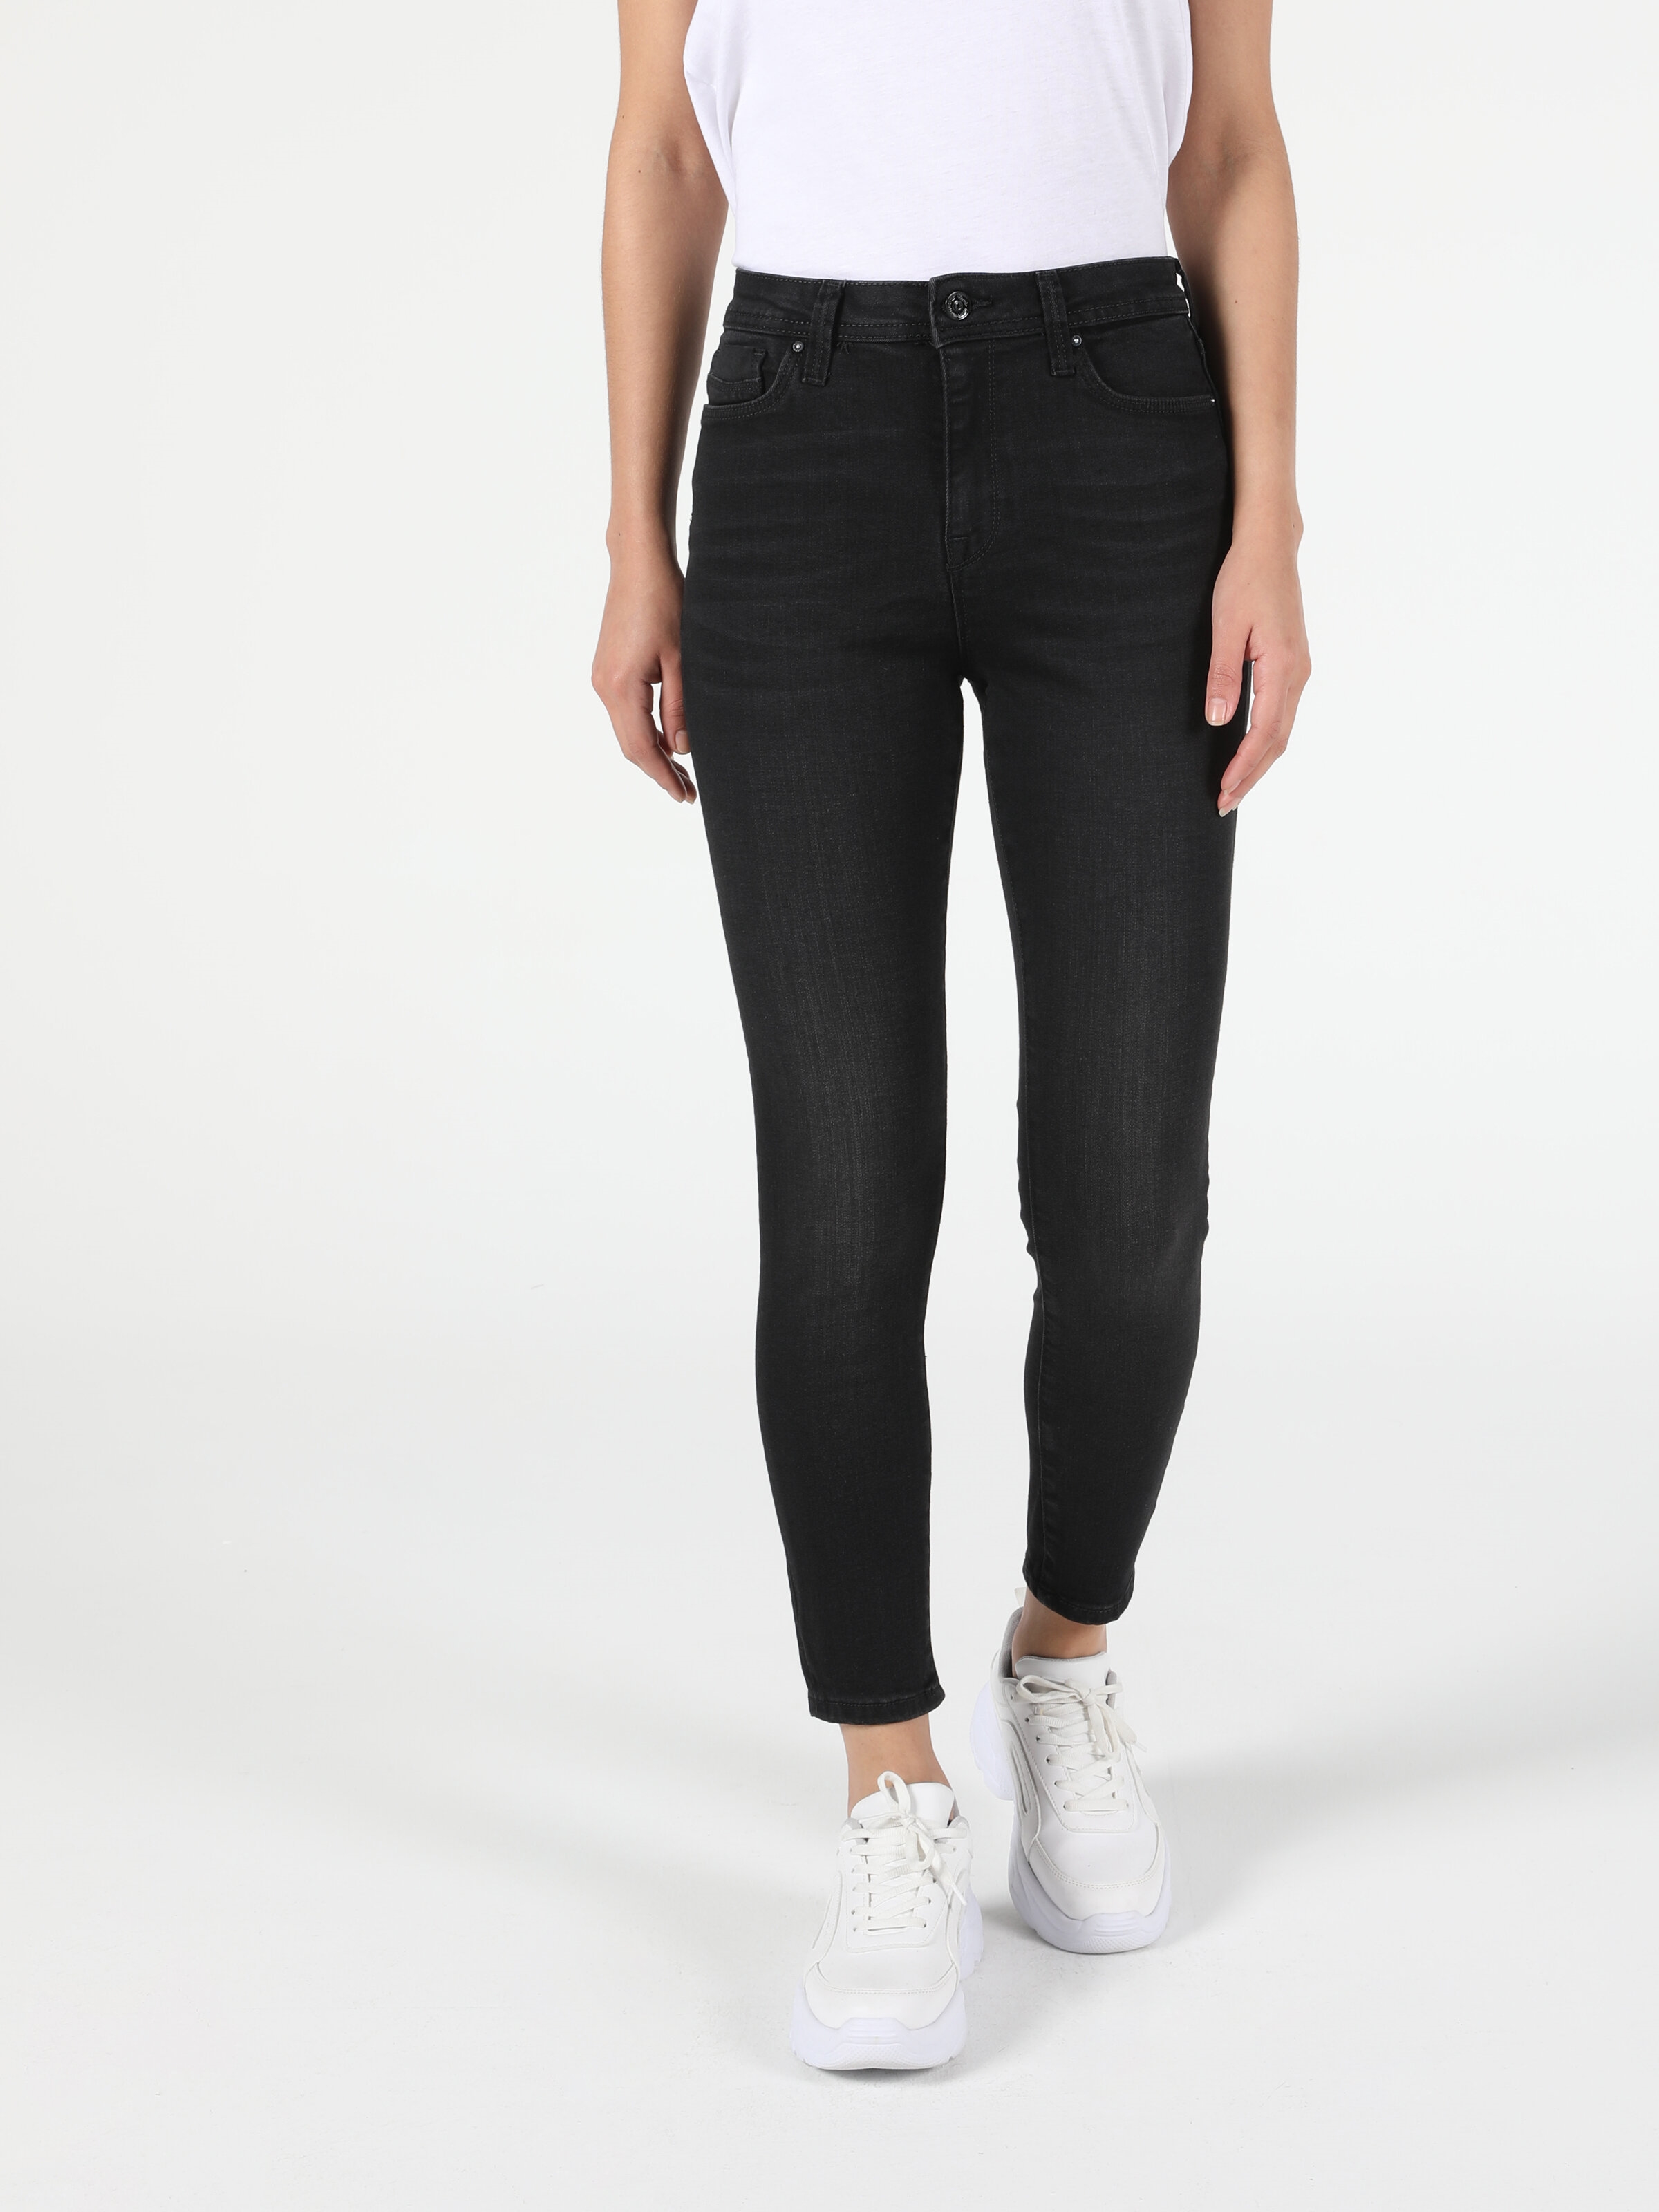 Colins 760 Dıana Yüksek Bel Dar Paça Super Slim Fit Siyah Kadın Jean Pantolon. 3